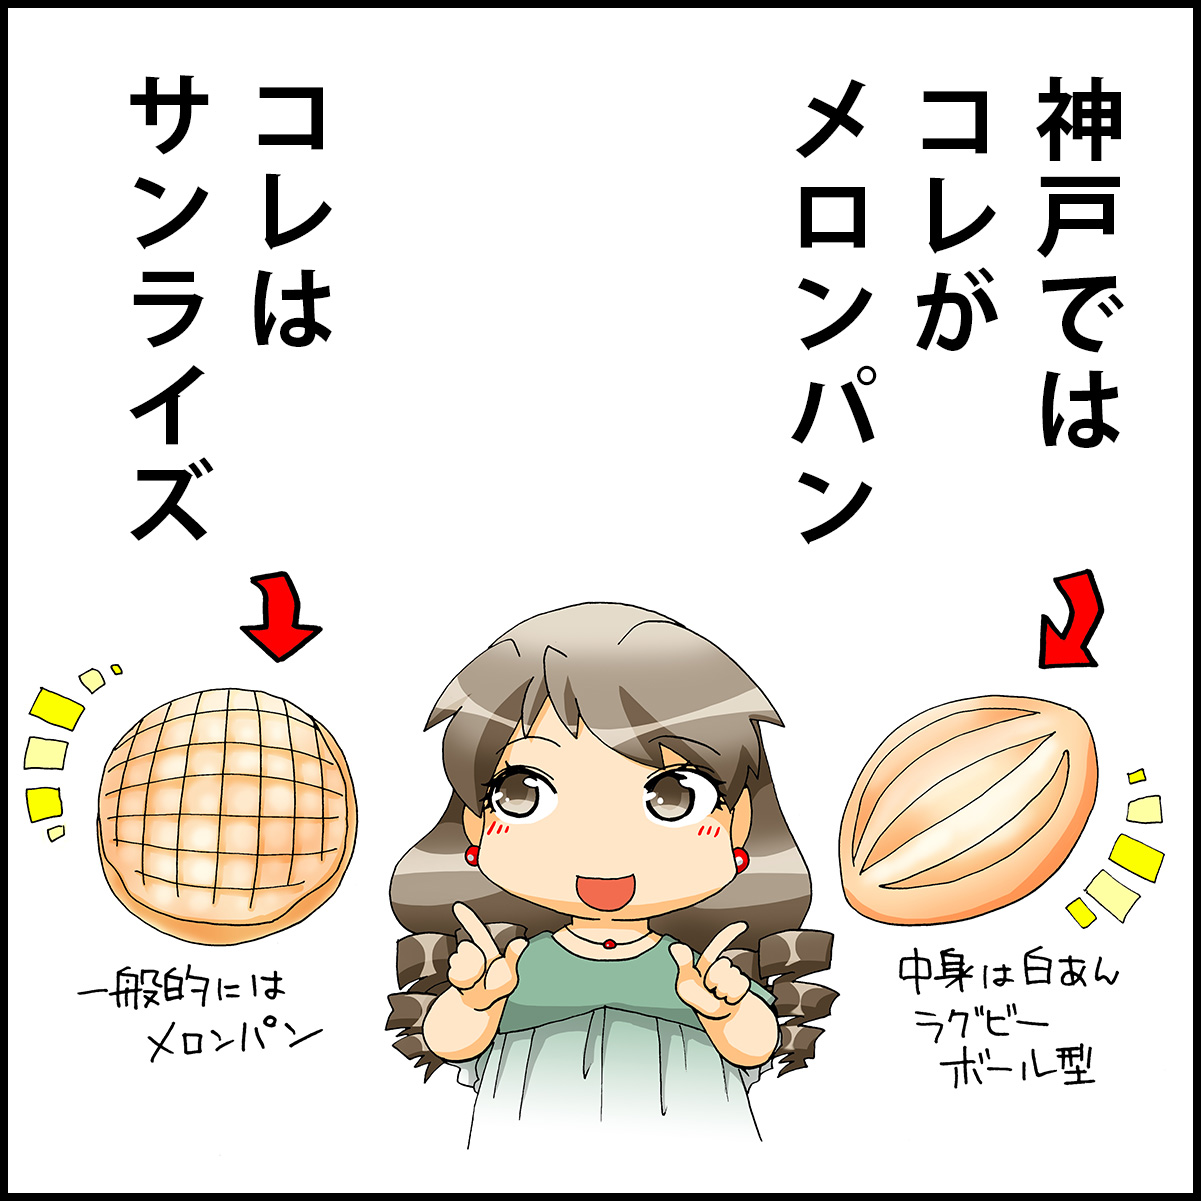 神戸の「メロンパン」と「サンライズ」